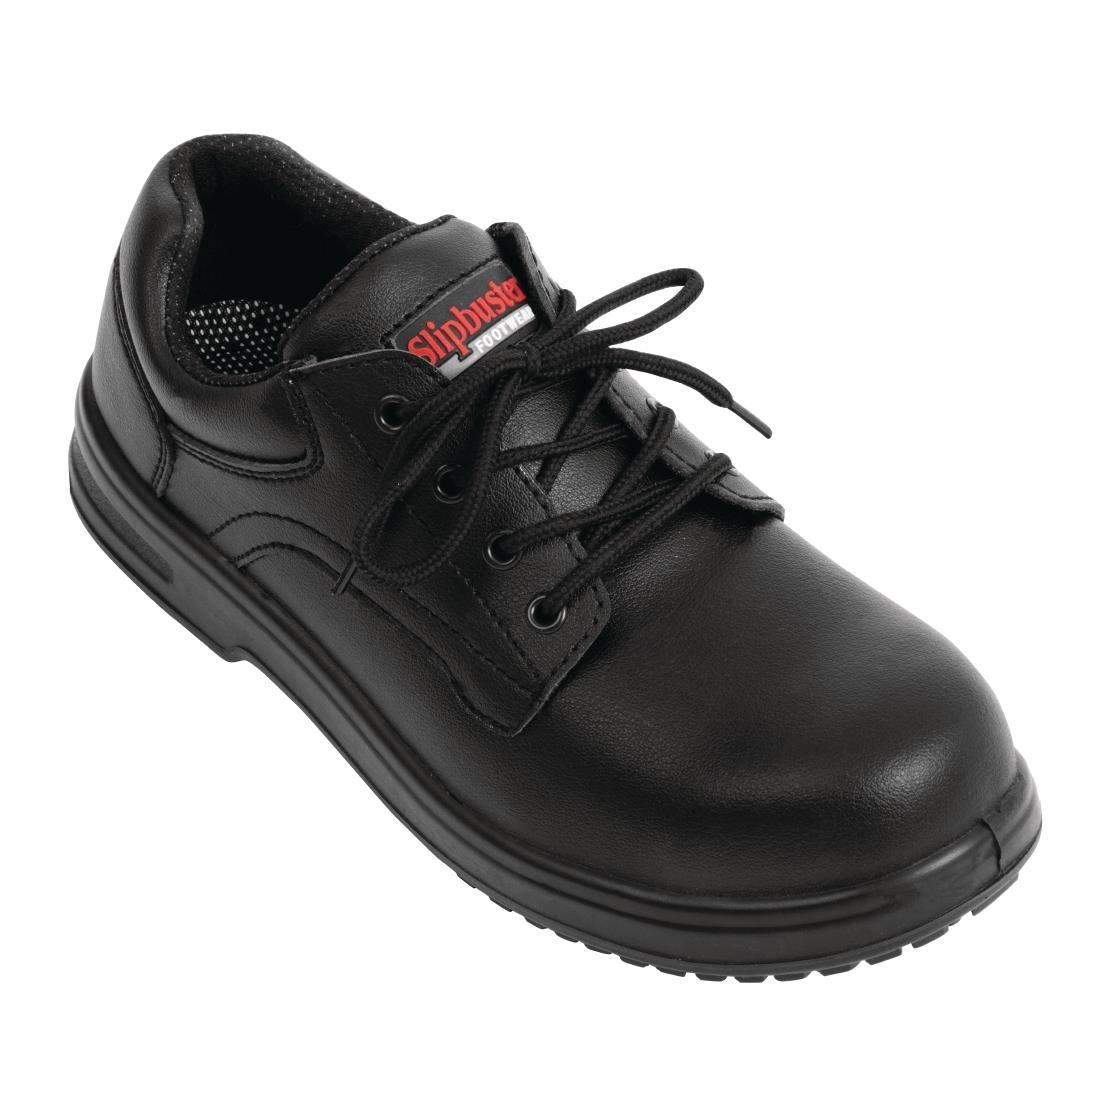 Slipbuster Basic Shoes Slip Resistant Black 42 - BB498-42  - 1